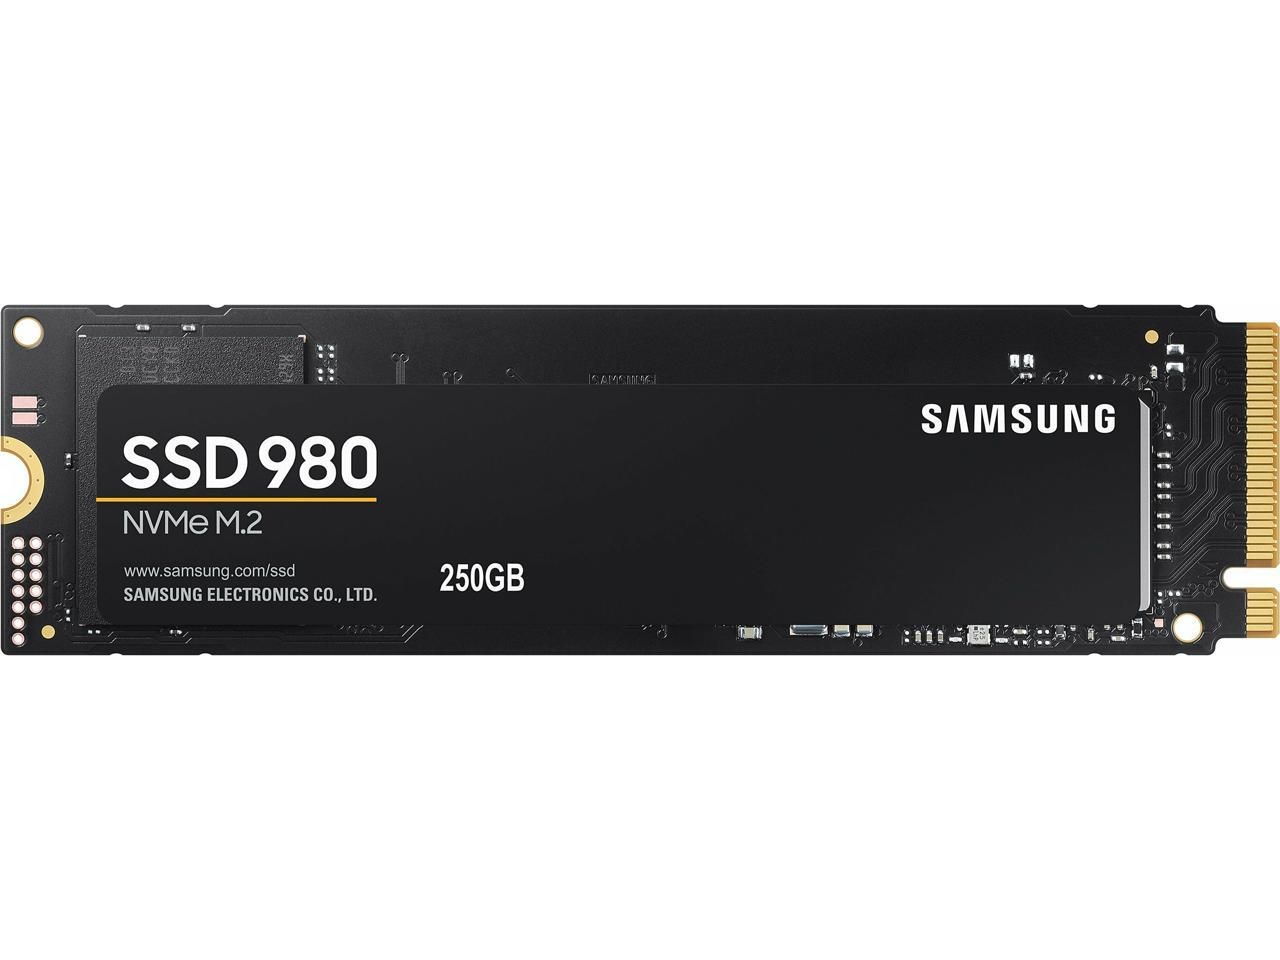 Ssd samsung mz v8v1t0bw. Твердотельный накопитель SSD M.2 2280 500gb Samsung 980 [MZ-v8v500bw] (r3100/w2600mb/s)_CN. Solid State Drive 980. MZ-v8v1t0bw. SSD Озон.